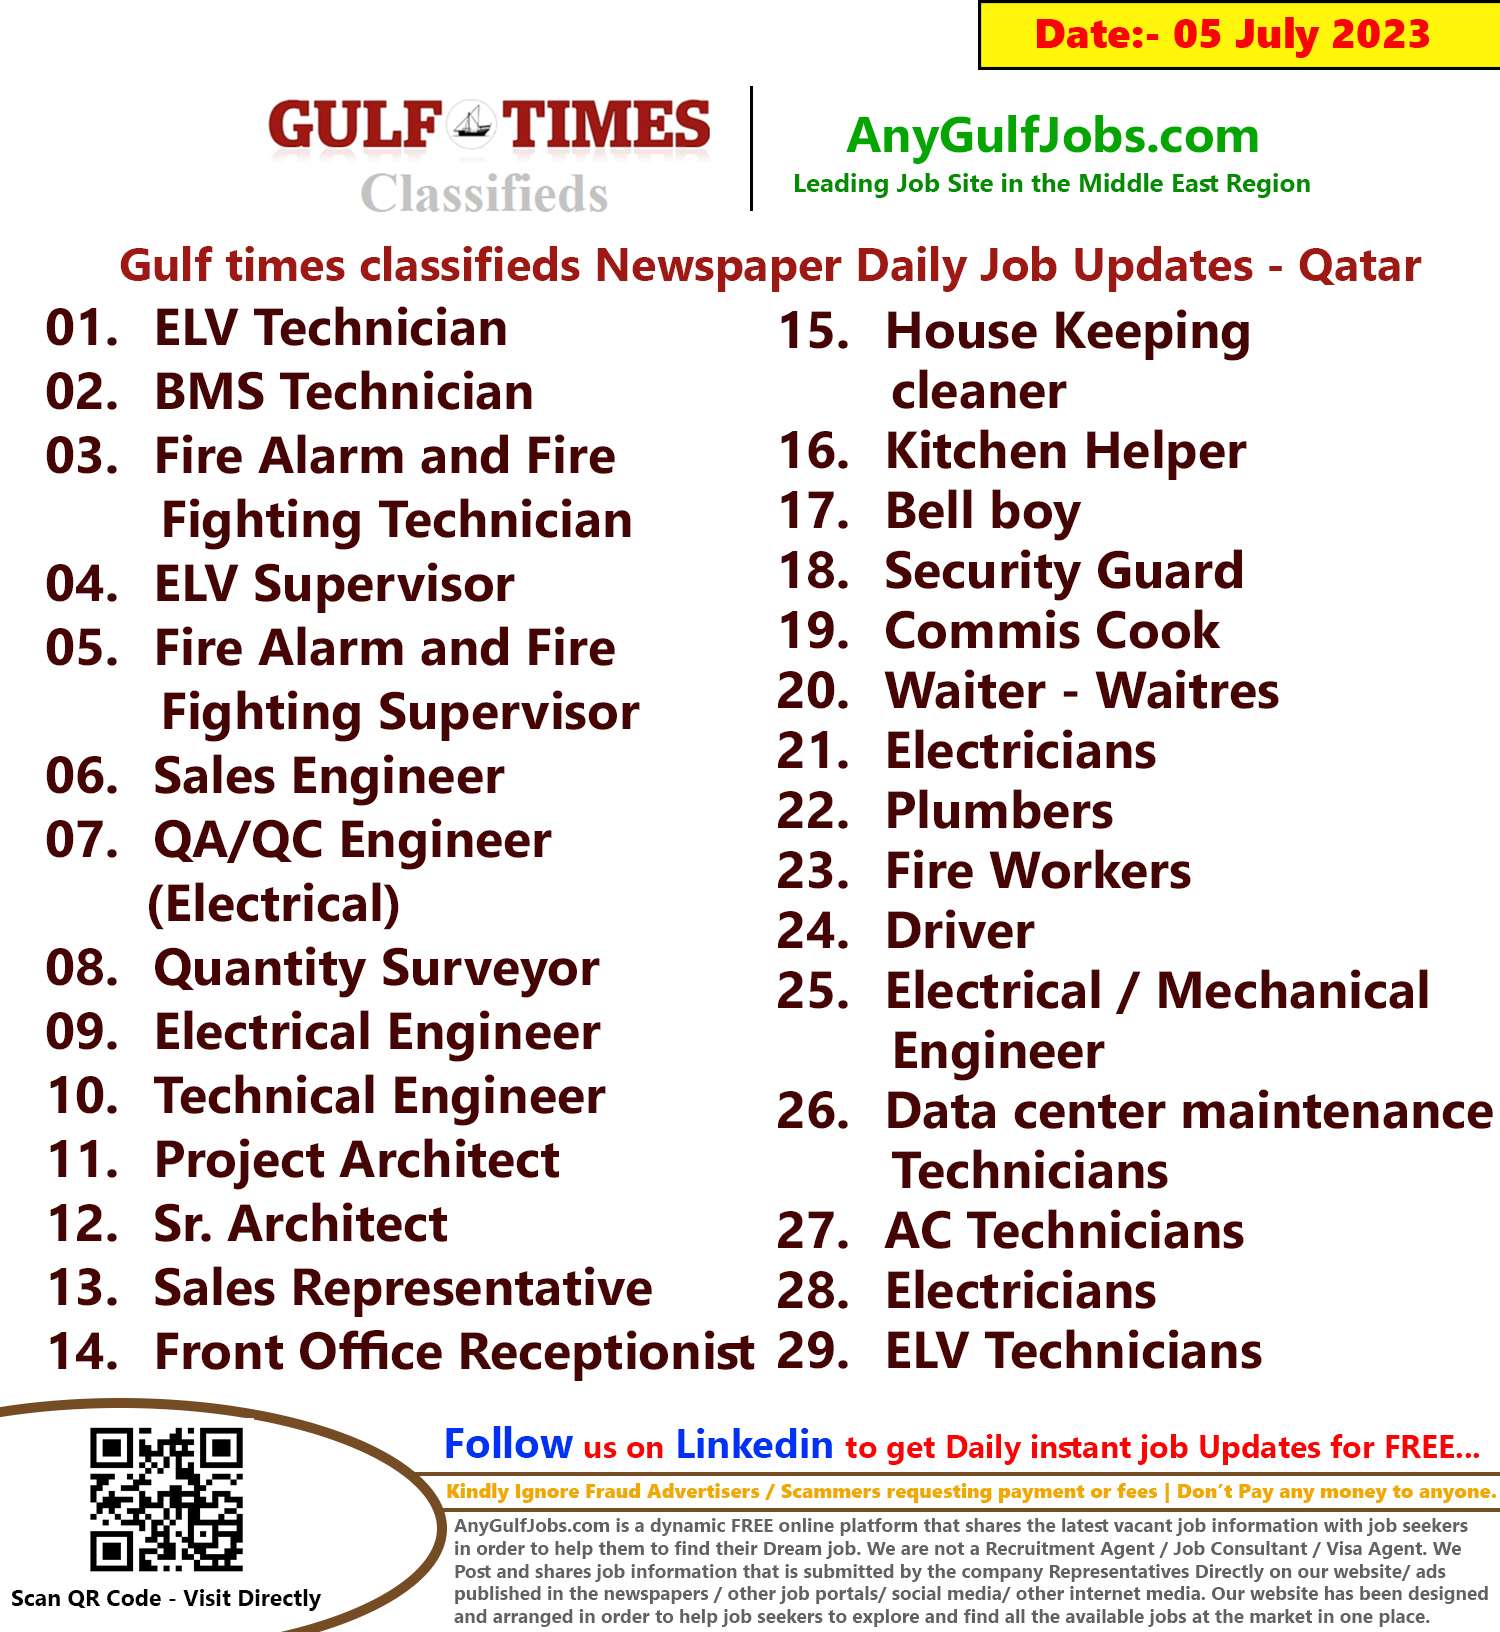 Gulf times classifieds Job Vacancies Qatar - 05 July 2023